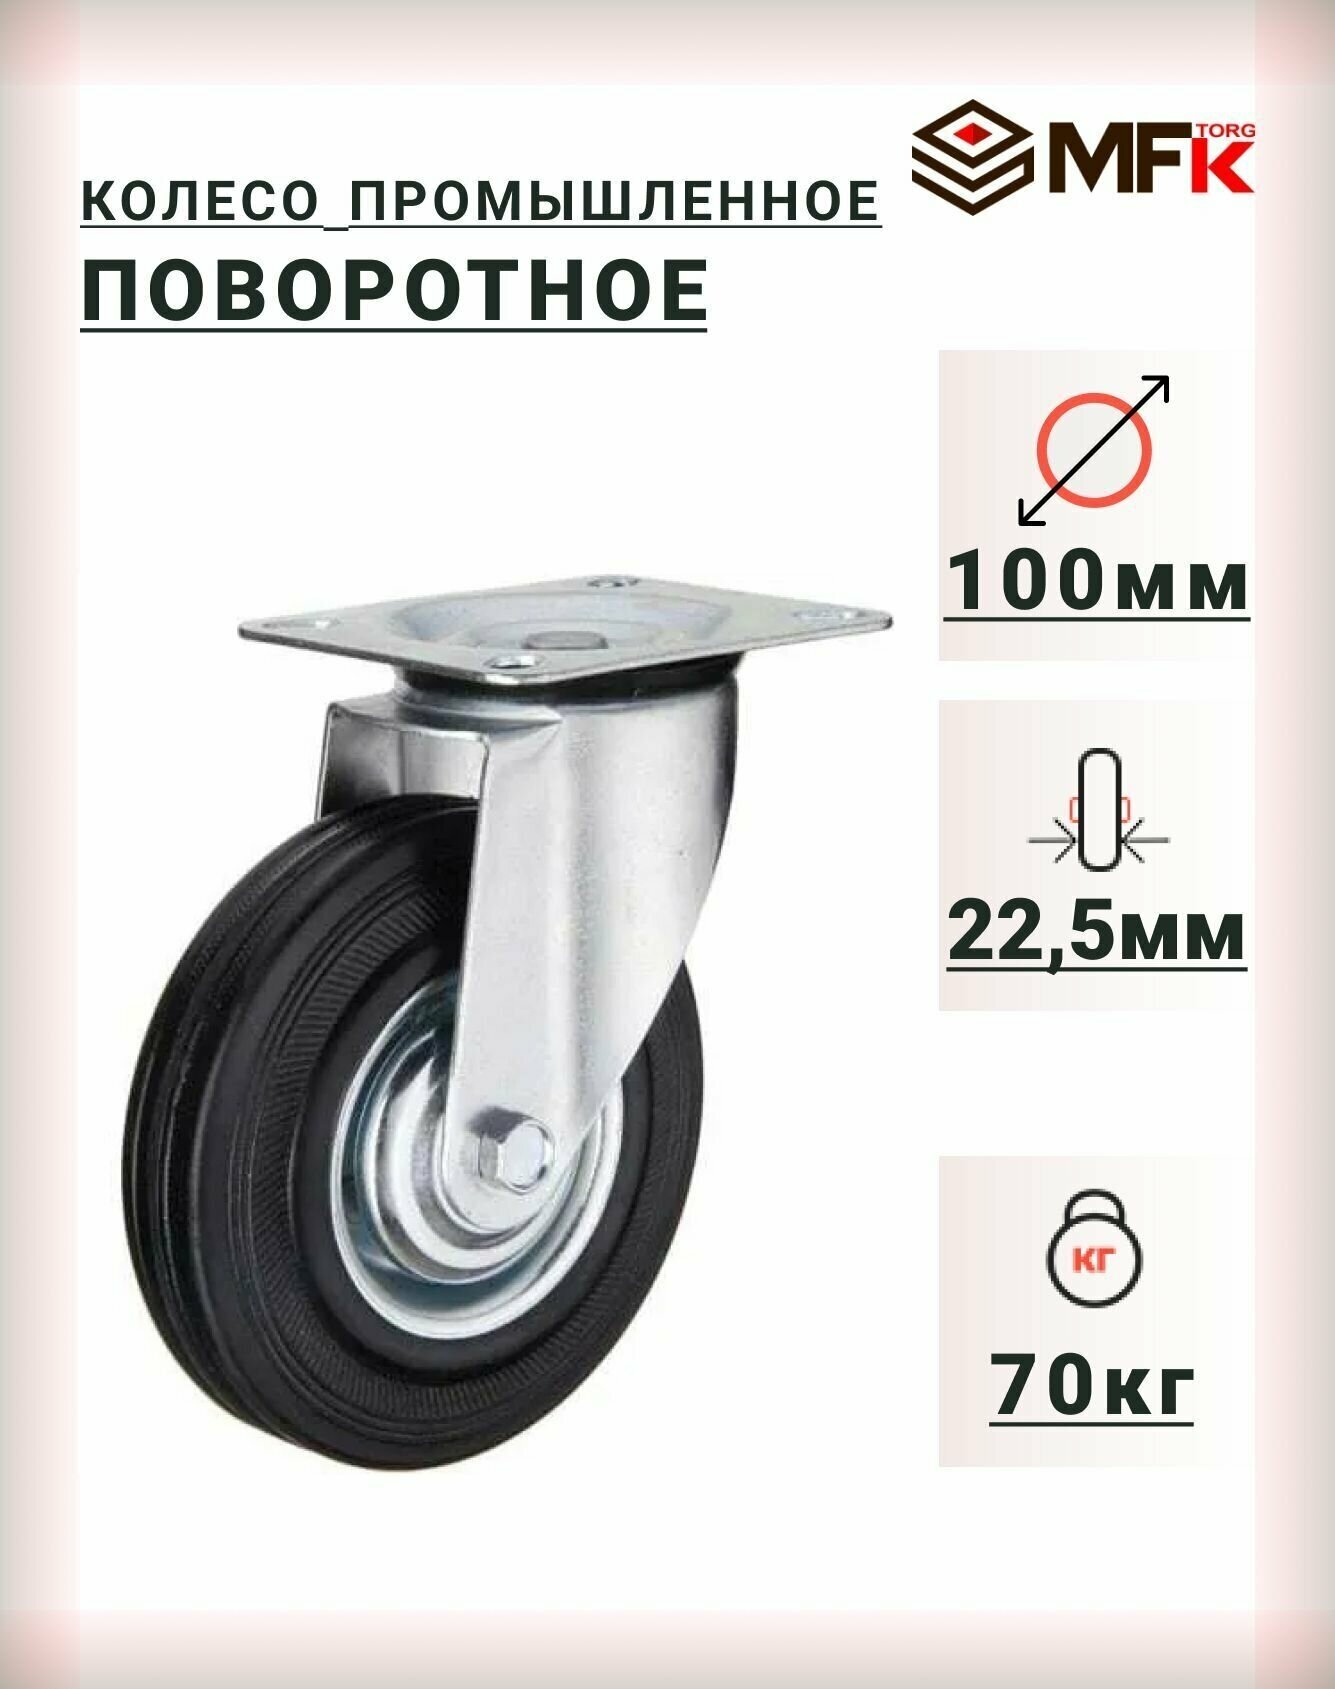 Колесо промышленное поворотное 100мм (SC42) для тележек мфк-торг 4001100 - фотография № 1